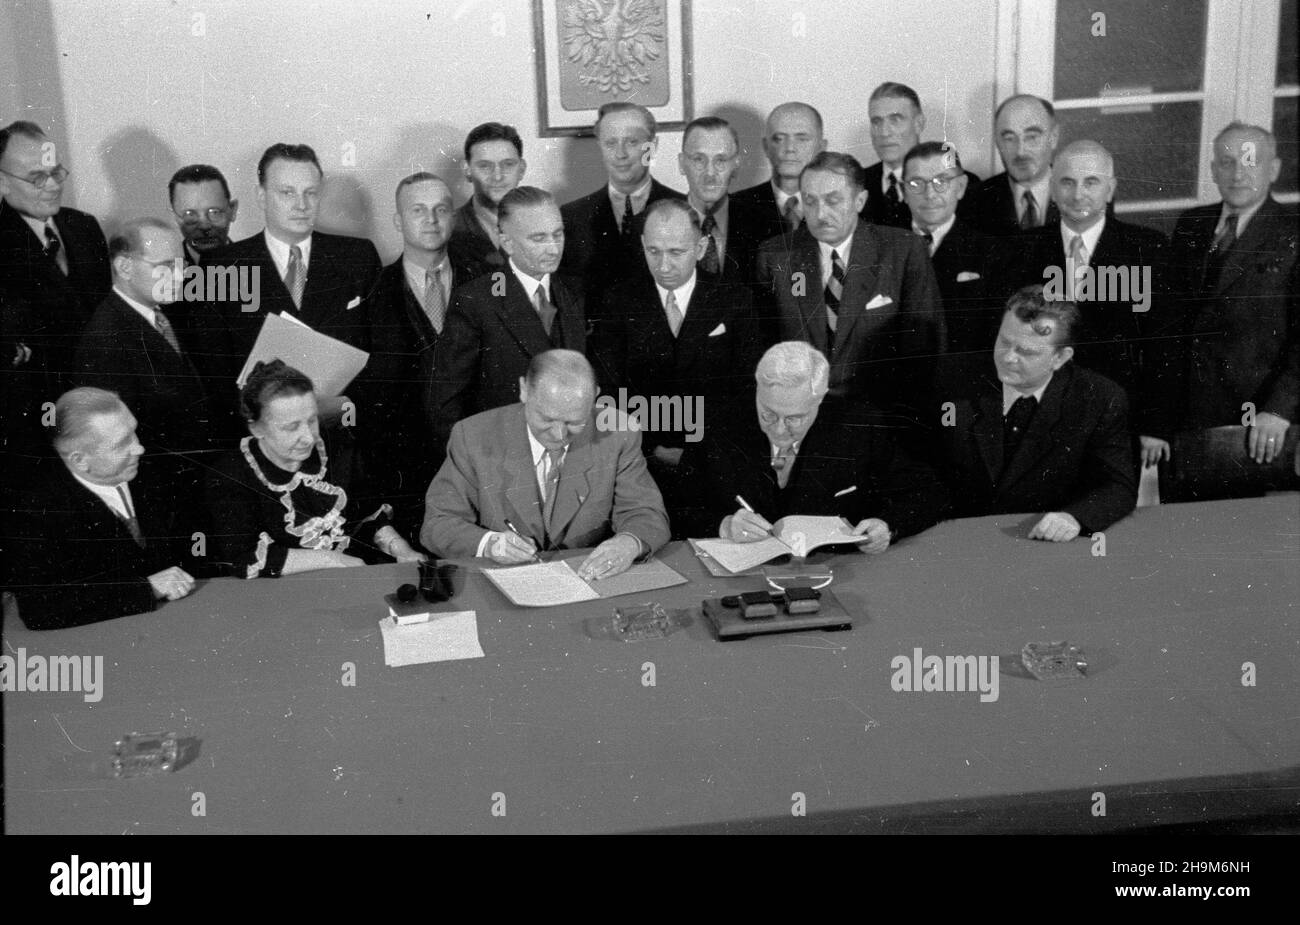 Warszawa, 1948-09-02. Podpisanie przez Polskê i Czechos³owacjê umowy pocztowo-telegraficznej. Nz. za sto³em siedz¹, m.in.: czeski minister poczt dr Alois Neuman (3L), minister poczt i telegrafów prof. Wac³aw Szymanowski (2P). ka  PAP      Warsaw, Sept. 2, 1948. Poland and Czechoslovakia sign an agreement on posts and telegraphs. Pictured: Czech Post Minister Alois Neuman (3rd left), Post and Telegraphs Minister Professor Waclaw Szymanowski (4th right).  ka  PAP Stock Photo